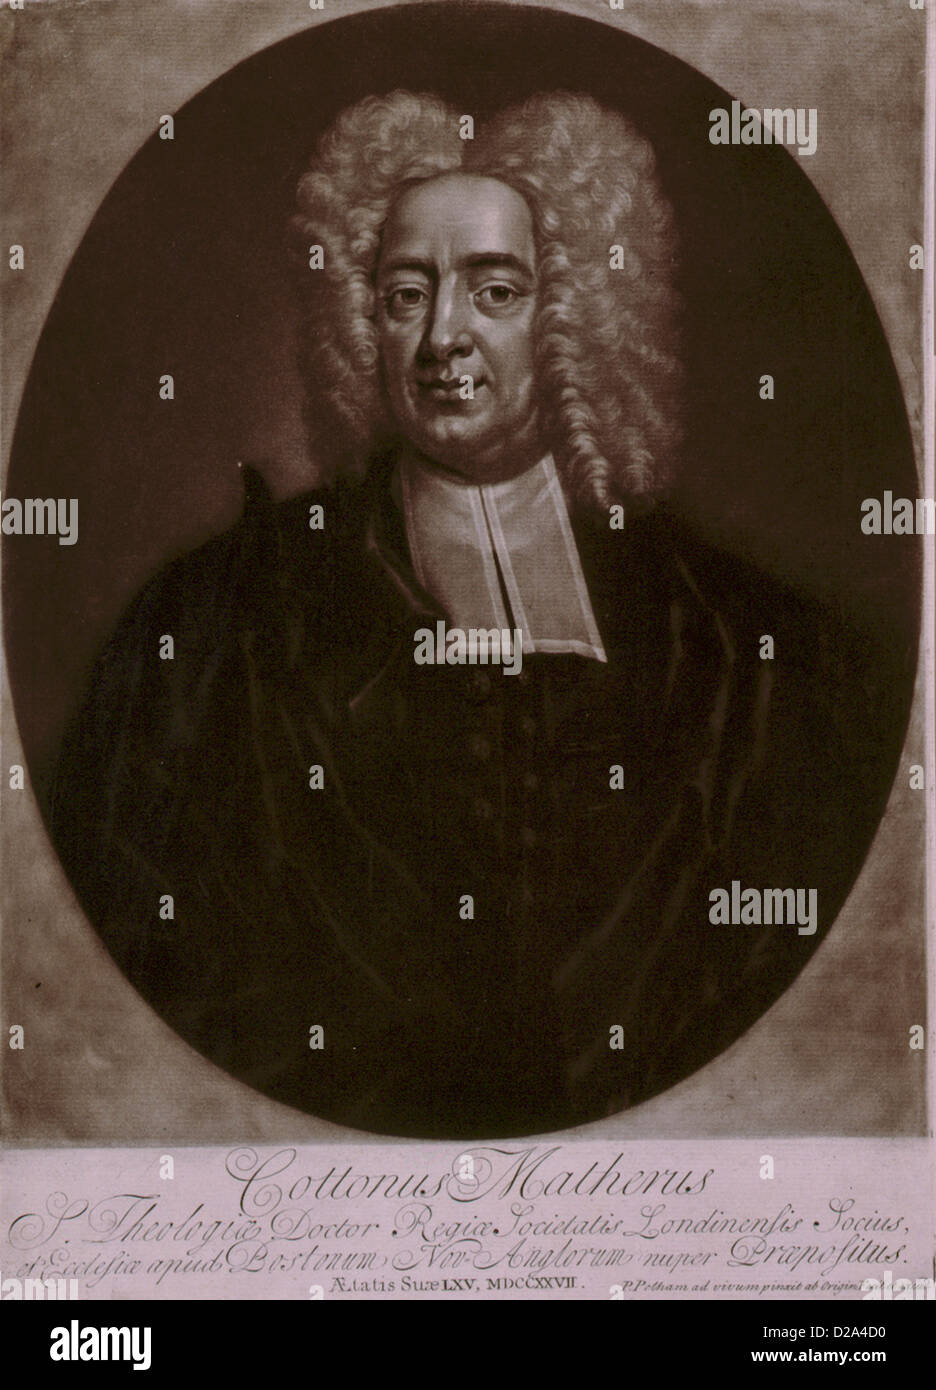 Cottonus Matherus S Theologiae Doctor Regia Societatis Londonensis .. Aetatis Suae Lxv Mdccxxvii [1727] / P Pelham Ad Vivum Stock Photo